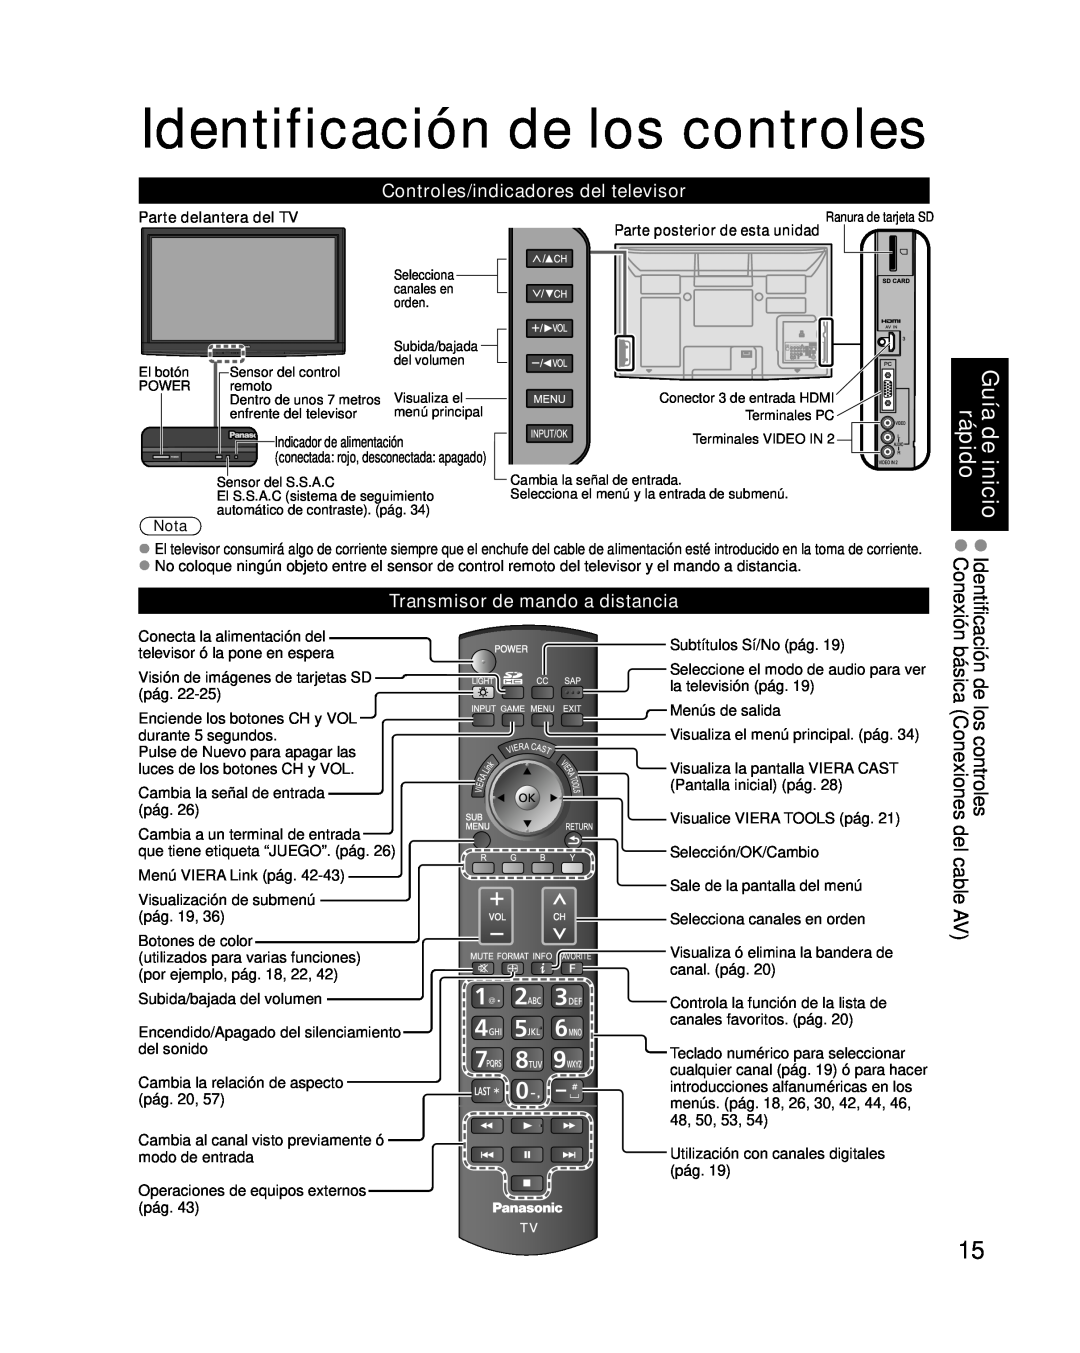 Panasonic TC-P54G10, TC-P50G10 Identificación de los controles, Guía de inicio rápido, Controles/indicadores del televisor 